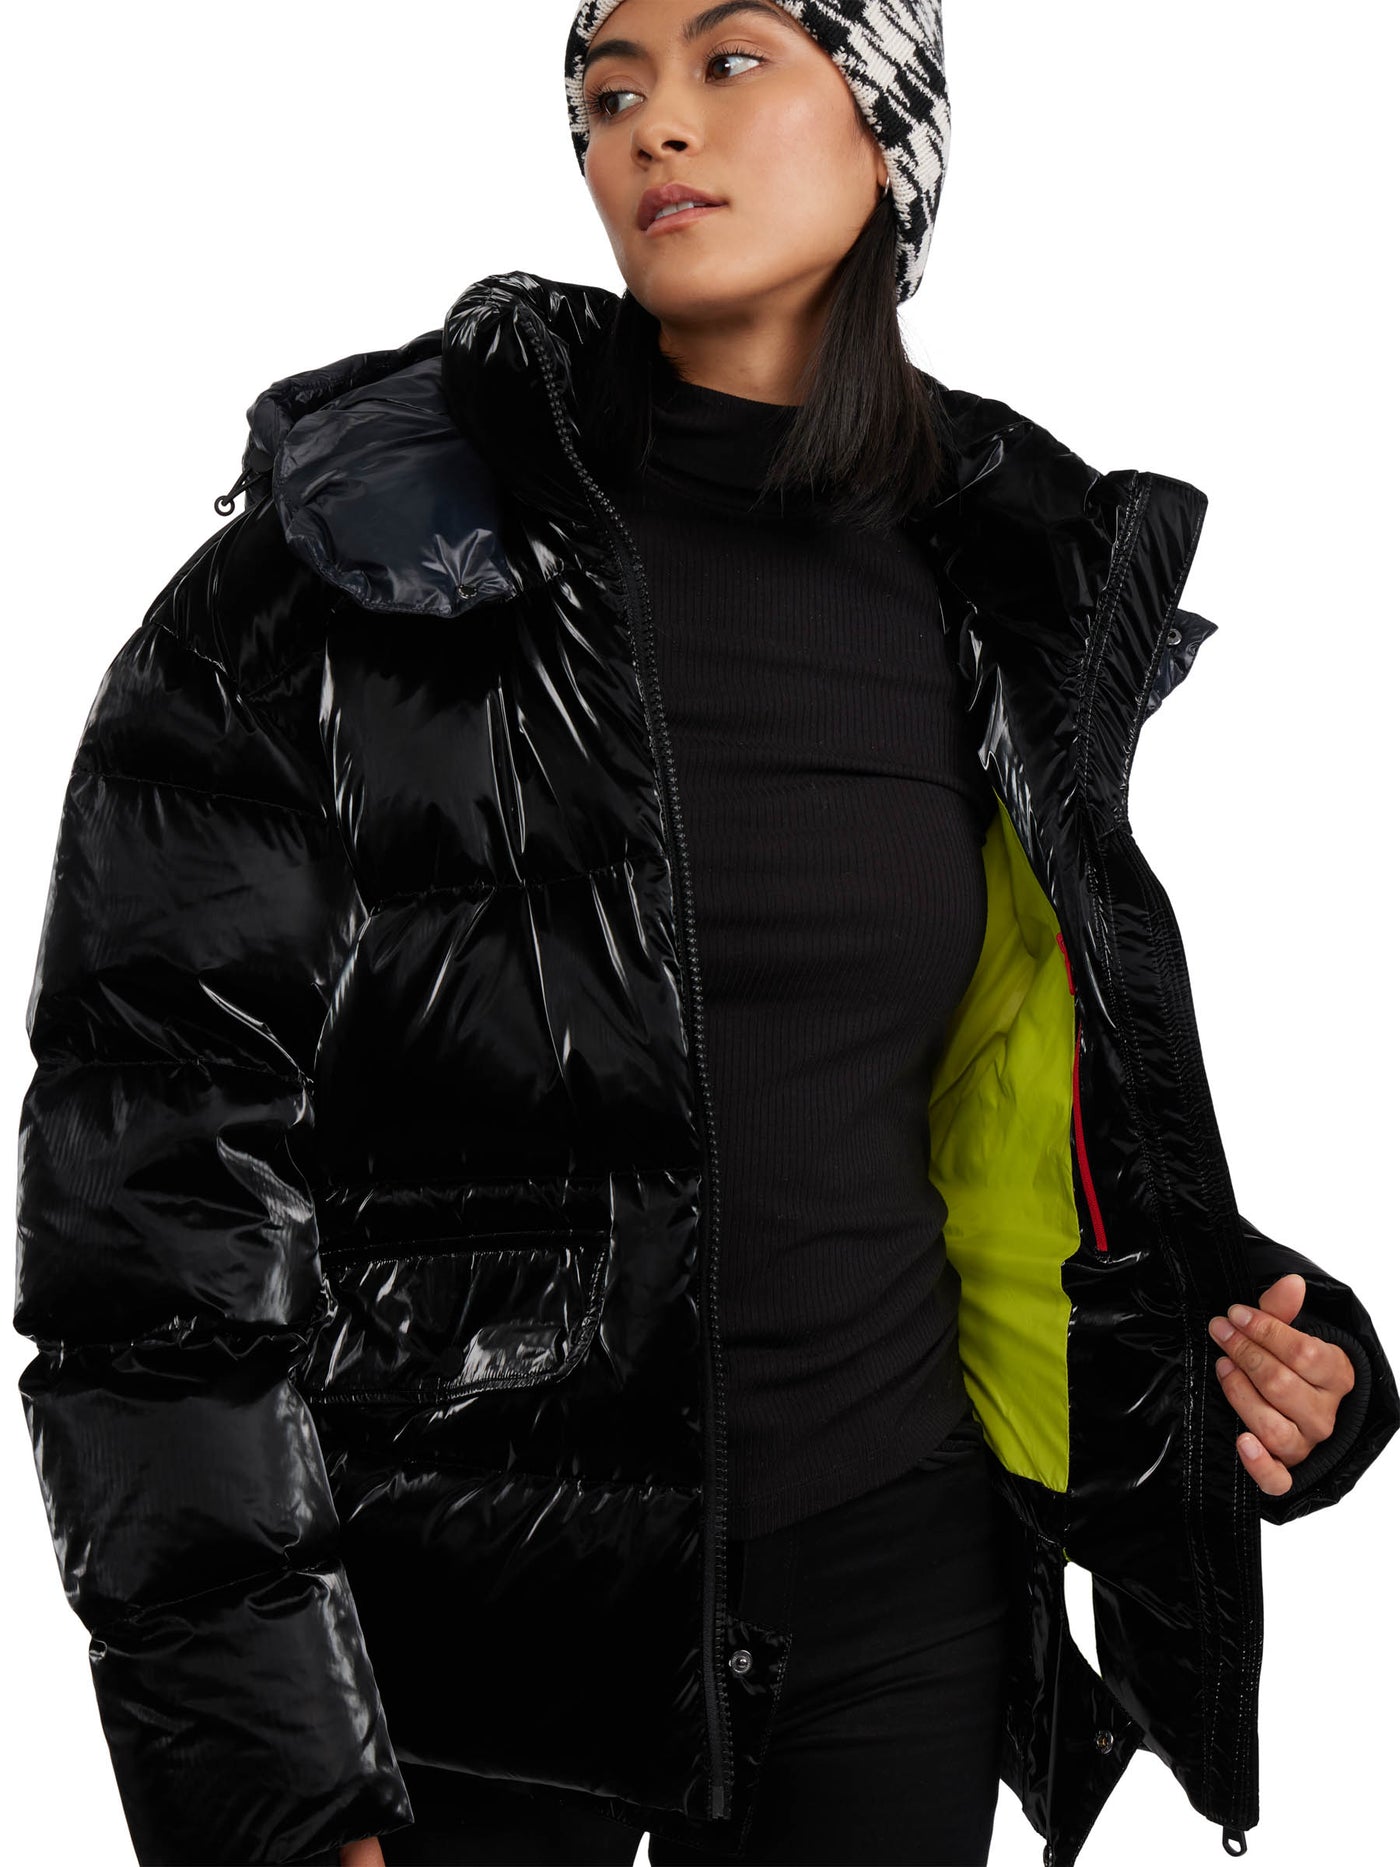 Ascella Women's Boxy Fit Short Puffer Jacket